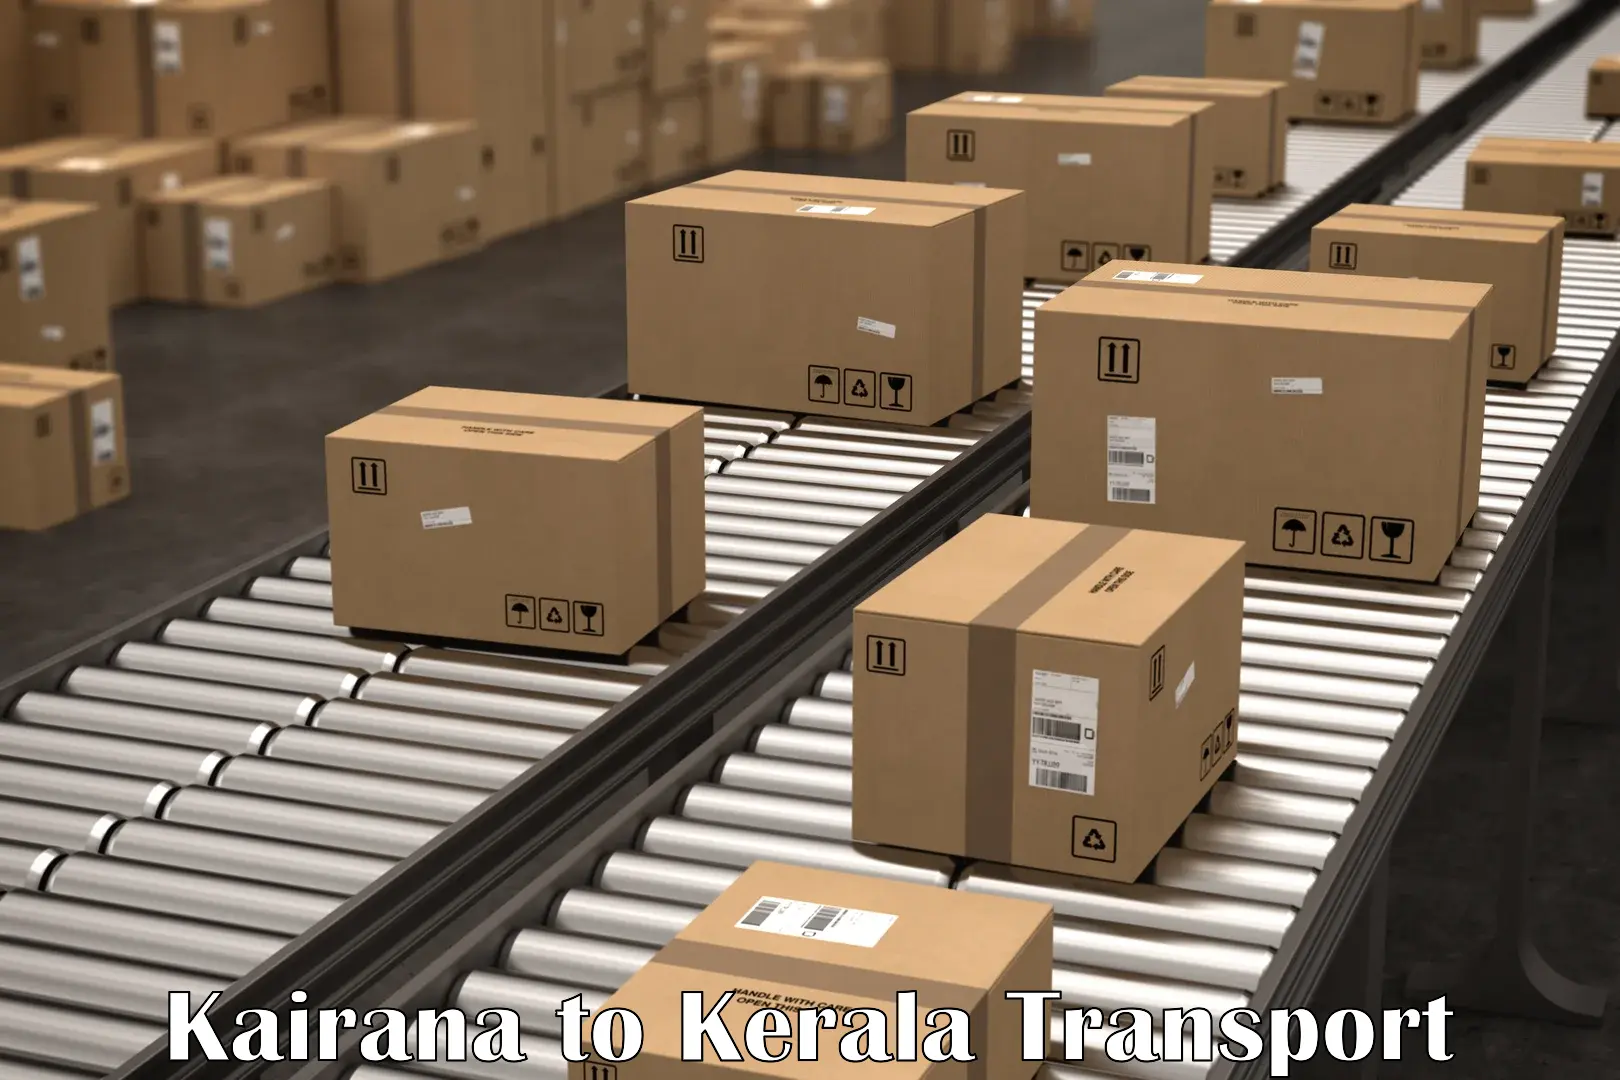 Shipping partner Kairana to Kadanad